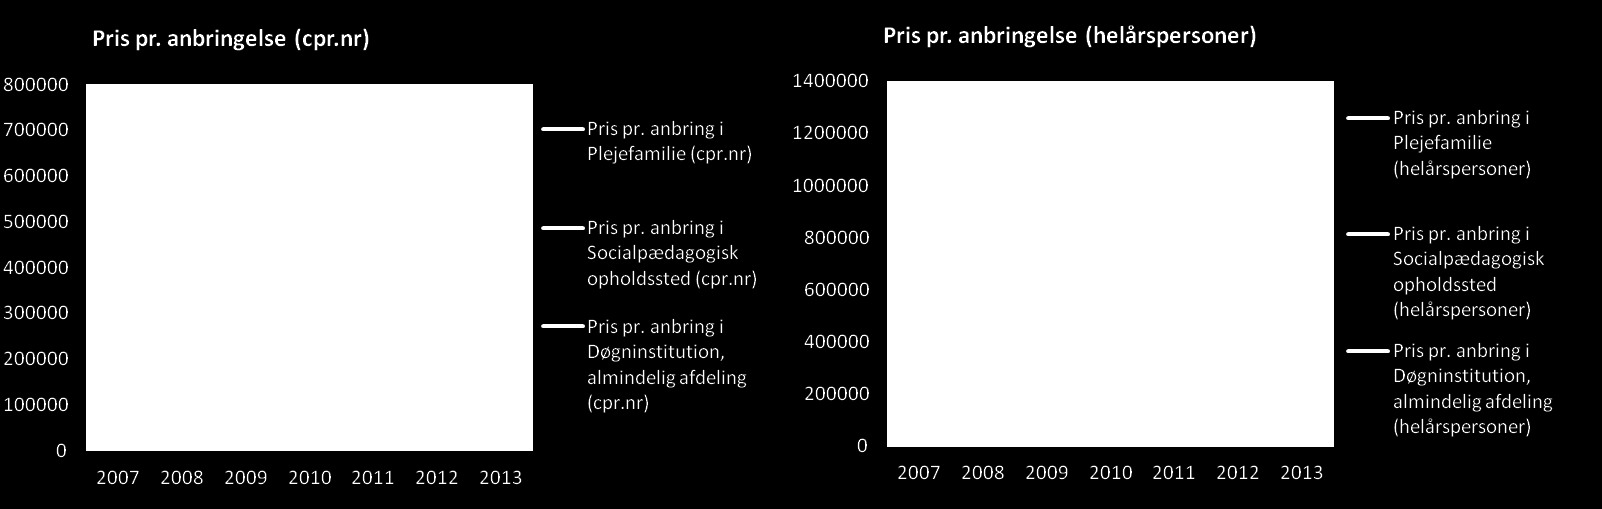 Kilde: Danmarks Statistik og Norddjurs Kommune I 2011 blev budget og forbrug bragt væsentligt mere i balance.